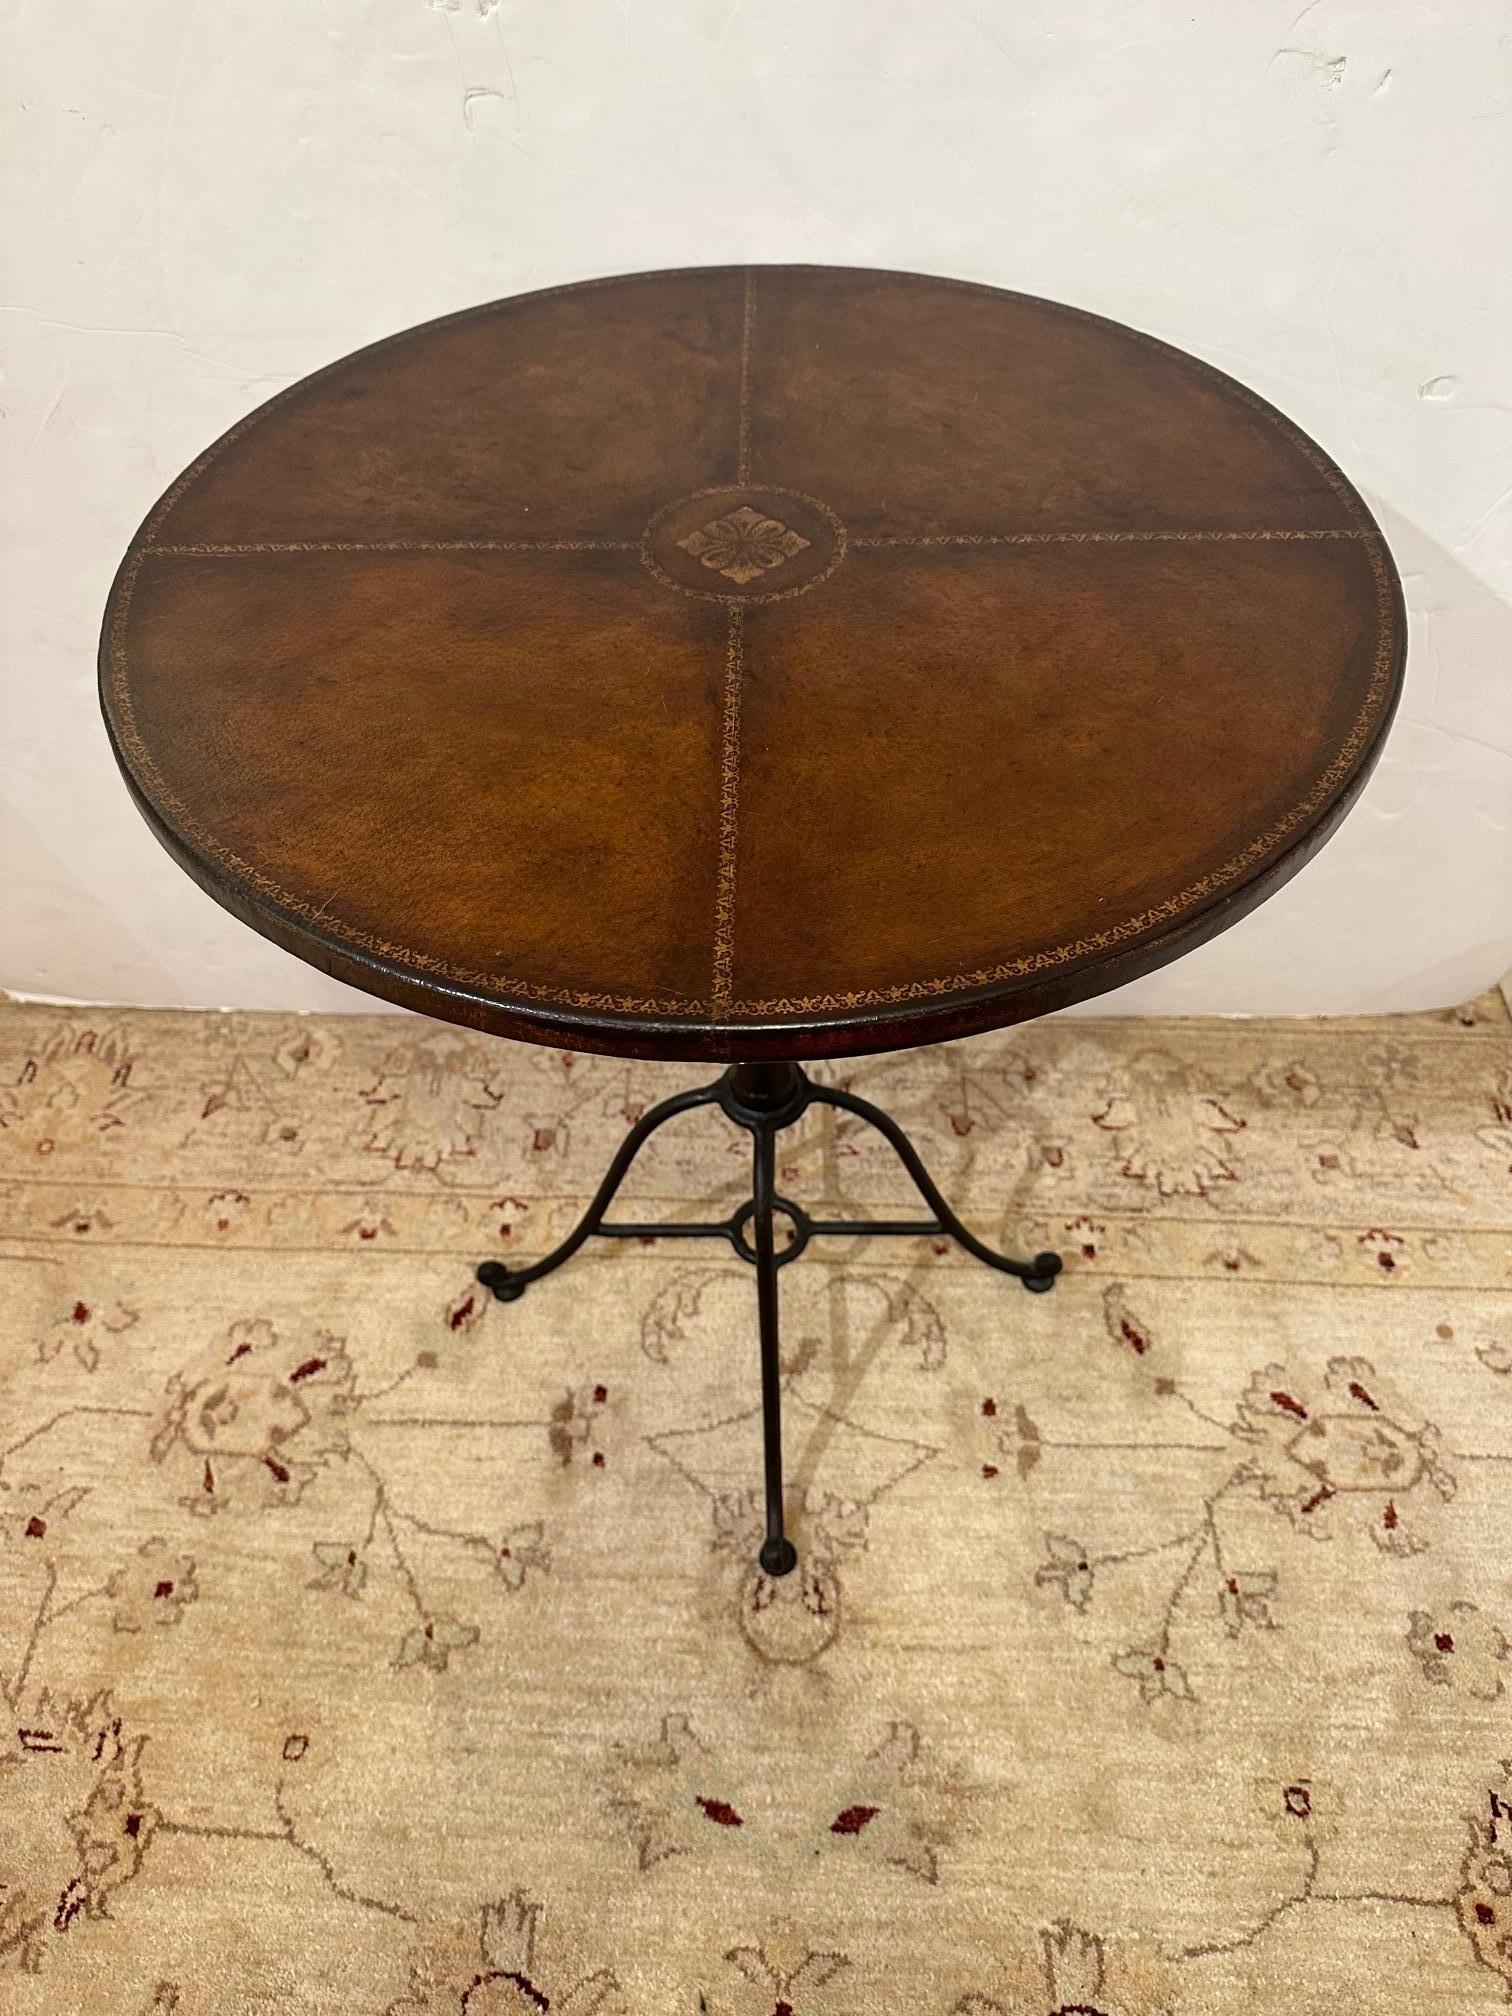 Superbe table d'appoint ronde ou petite table de bistrot avec une base en fer forgé à la main et un beau plateau en cuir marron estampé avec des motifs décoratifs dorés.